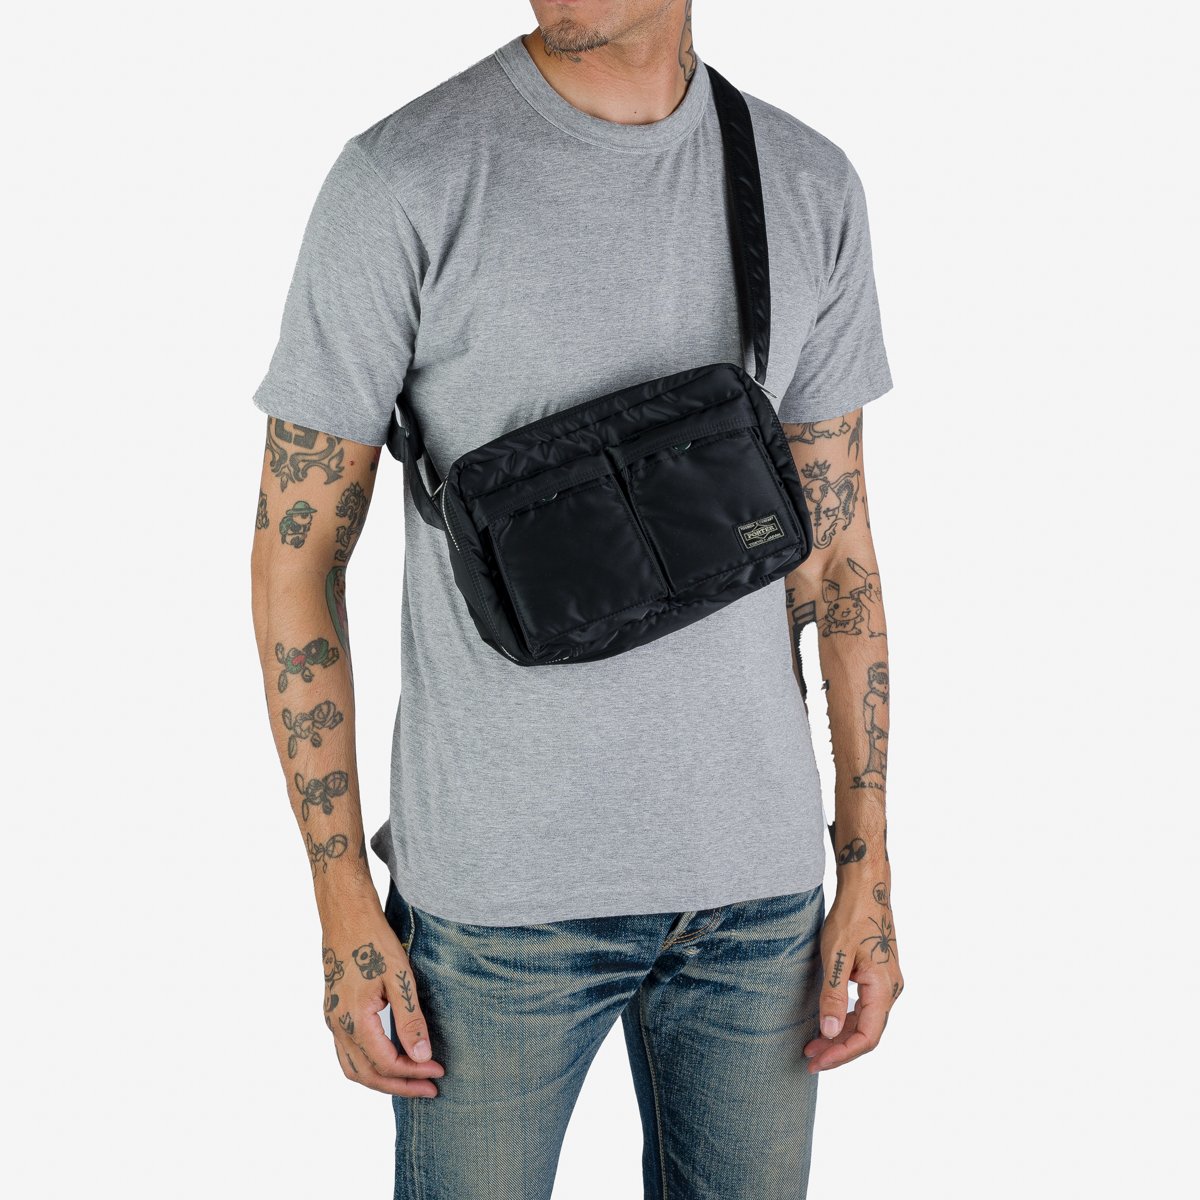 Porter-Yoshida & Co. Tanker Shoulder Bag